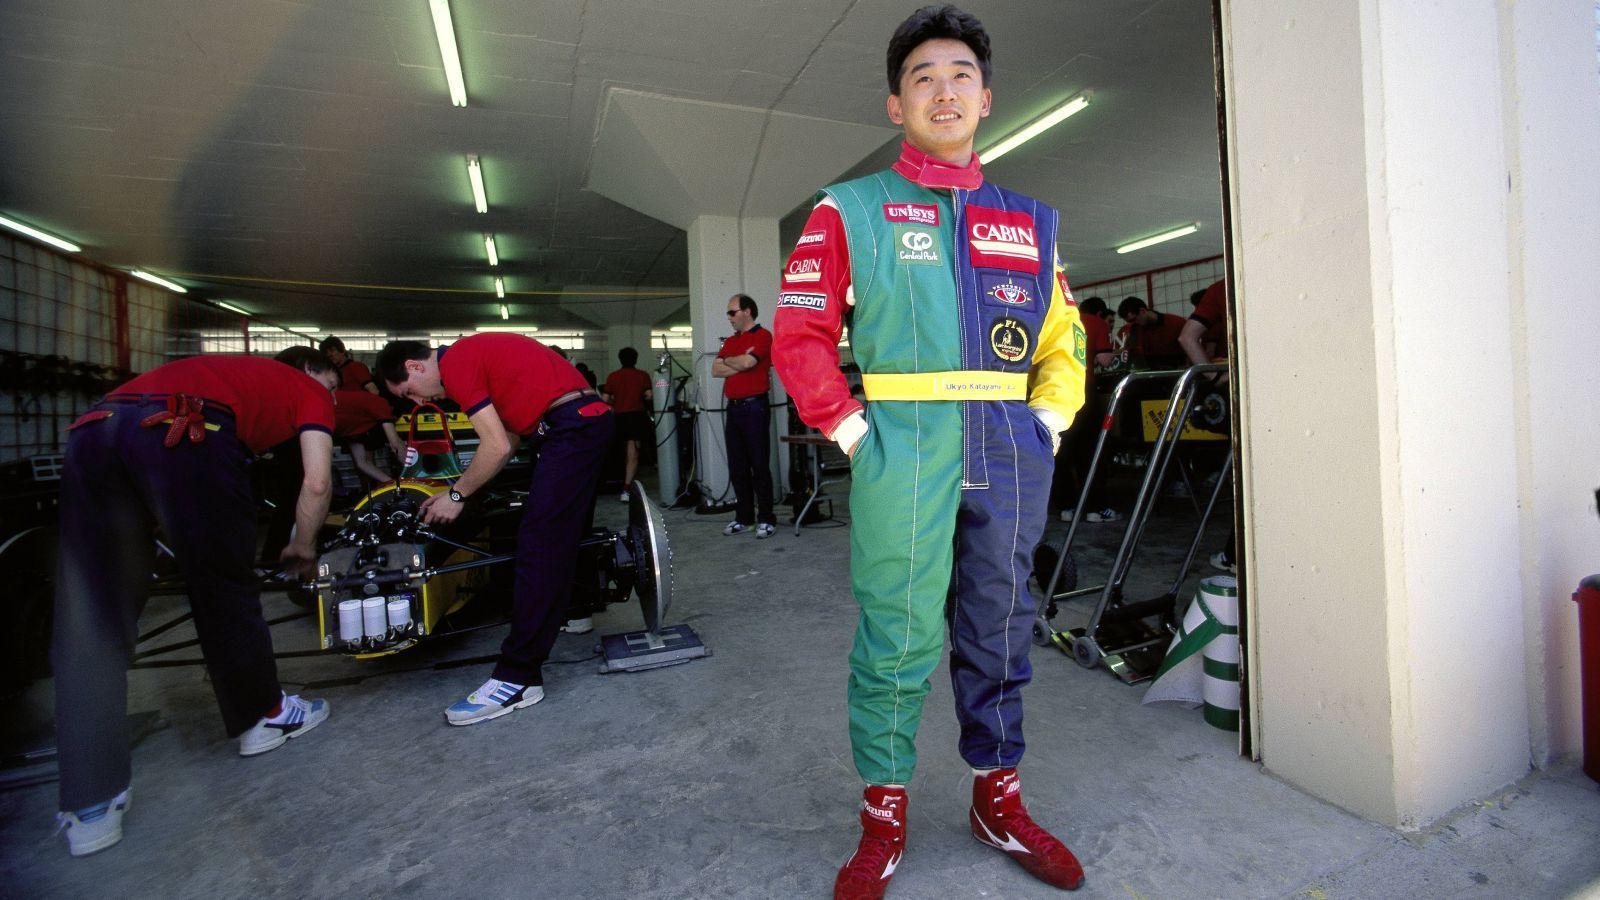 
                <strong>Ukyo Katayama</strong><br>
                Der Japaner gehört zu den Fahrern mit Kultstatus. Bei 95 Rennen stand er am Start, 26 Mal schaffte er es nicht bis in das Ziel. Sechs Kollisionen, neun Unfälle, elf Dreher, stets wurde sein Rennen auf andere Art und Weise beendet. Vor allem sein Fahrstil war spektakulär. Für eine einfache Kurve brauchte er mehrere Lenkeinschläge. Wie das funktioniert, haben selbst seine Kollegen nie begriffen. Nachdem bei ihm 1994 ein Tumor im Rücken entdeckt wurde, hatte er fortan starke Schmerzen beim Fahren und verunfallte noch häufiger. Alleine in der Saison 1995 schied er acht Mal aus. Seinerzeit hätte er Teamkollege von Michael Schumacher bei Benetton werden sollen, der Tumor verhinderte dies jedoch.
              